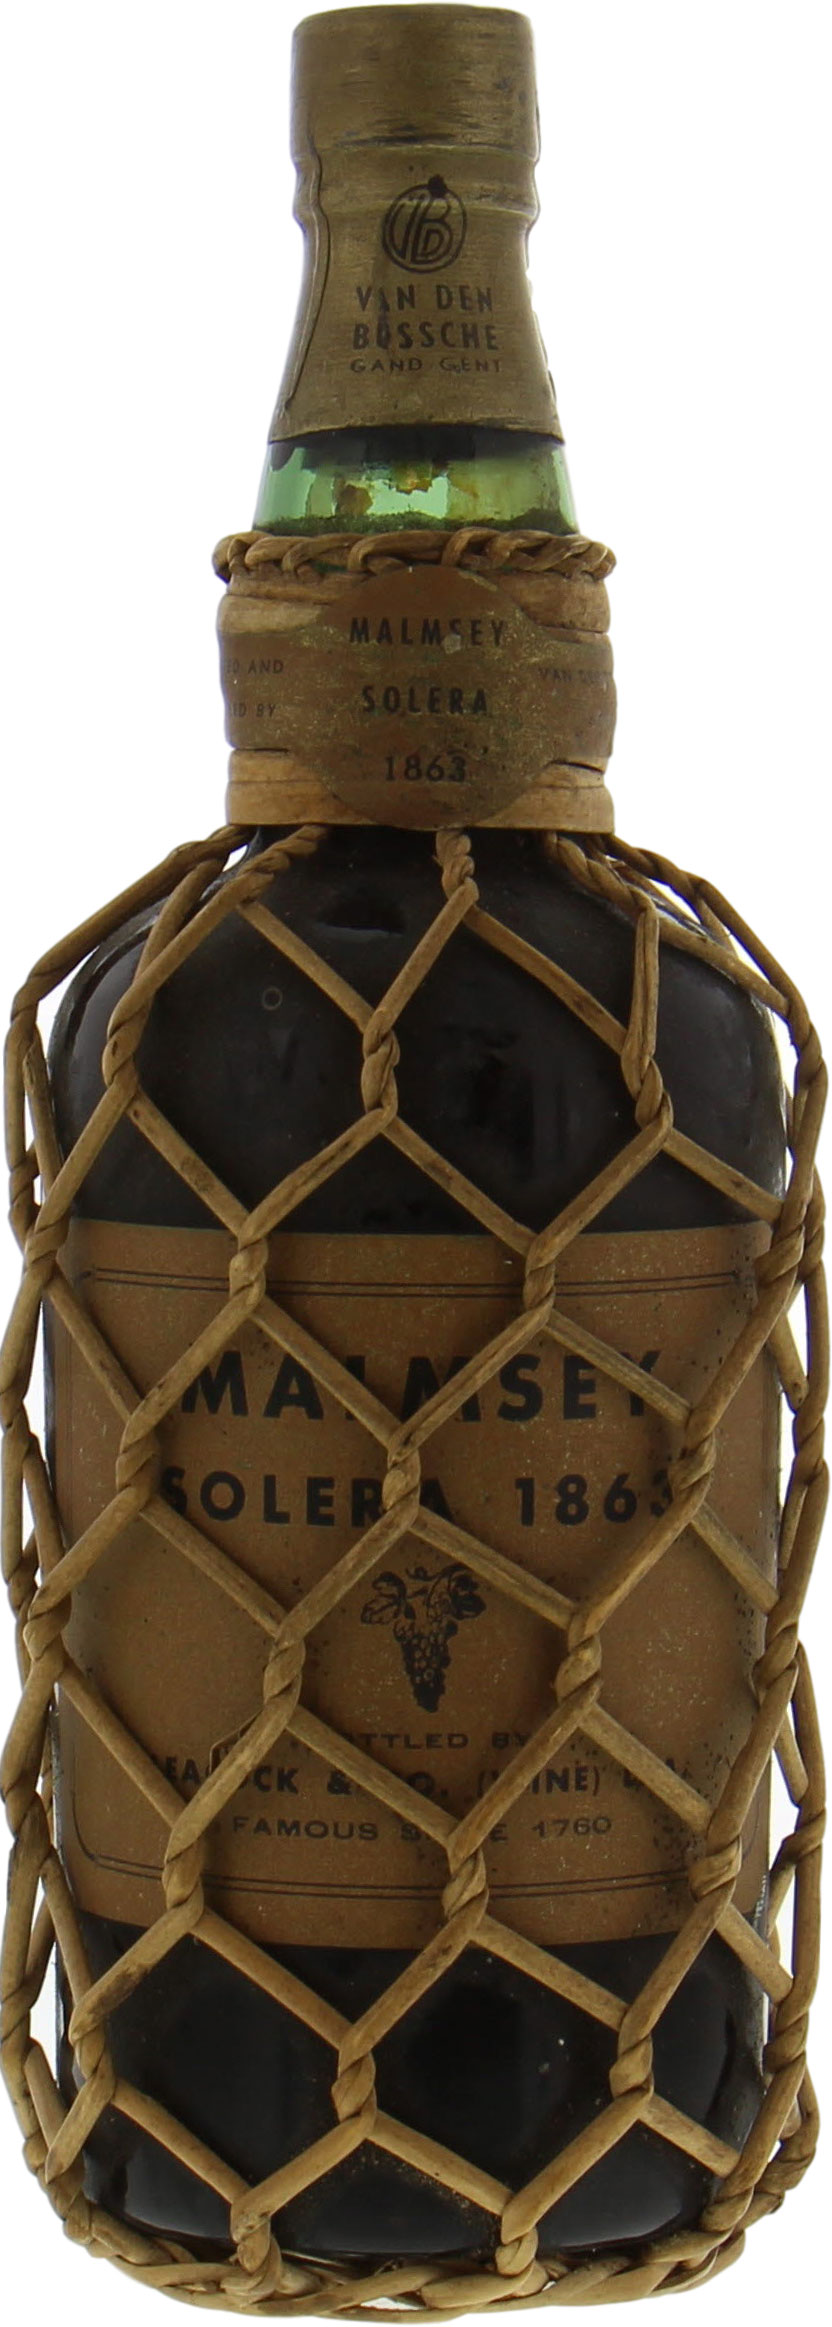 Leacock - Malmsey Solera 1863